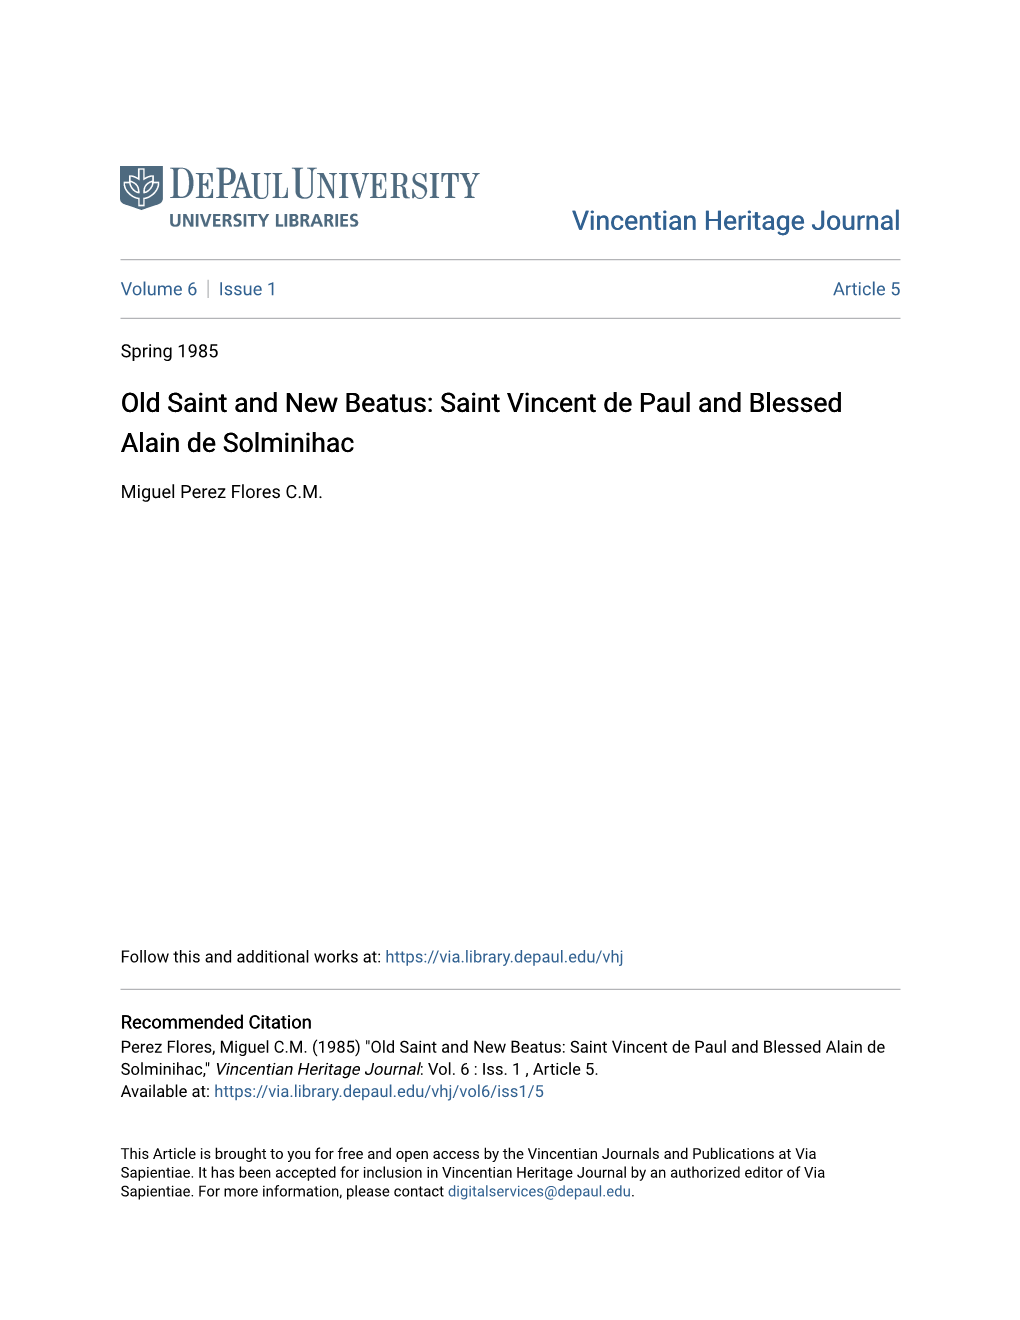 Saint Vincent De Paul and Blessed Alain De Solminihac